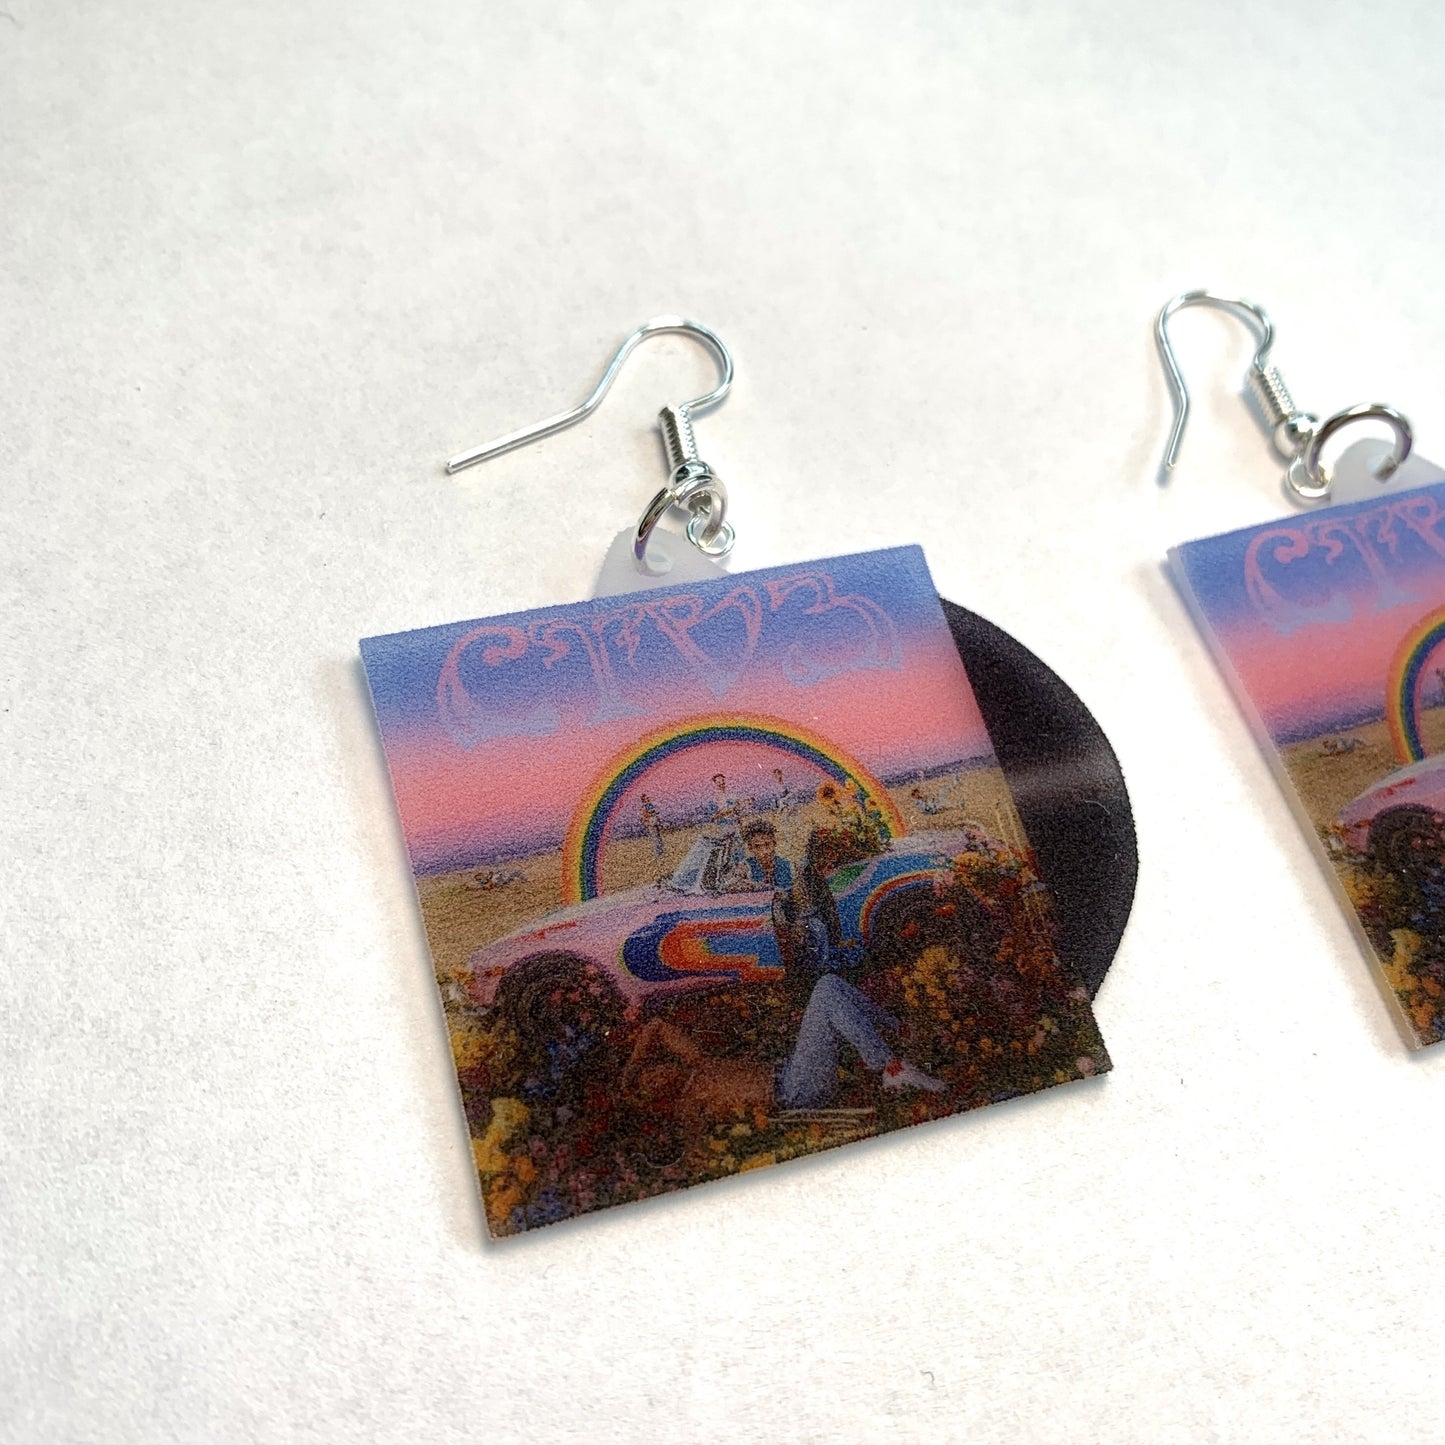 Jaden CTV3: Cool Tape Vol. 3 Vinyl Album Handmade Earrings!